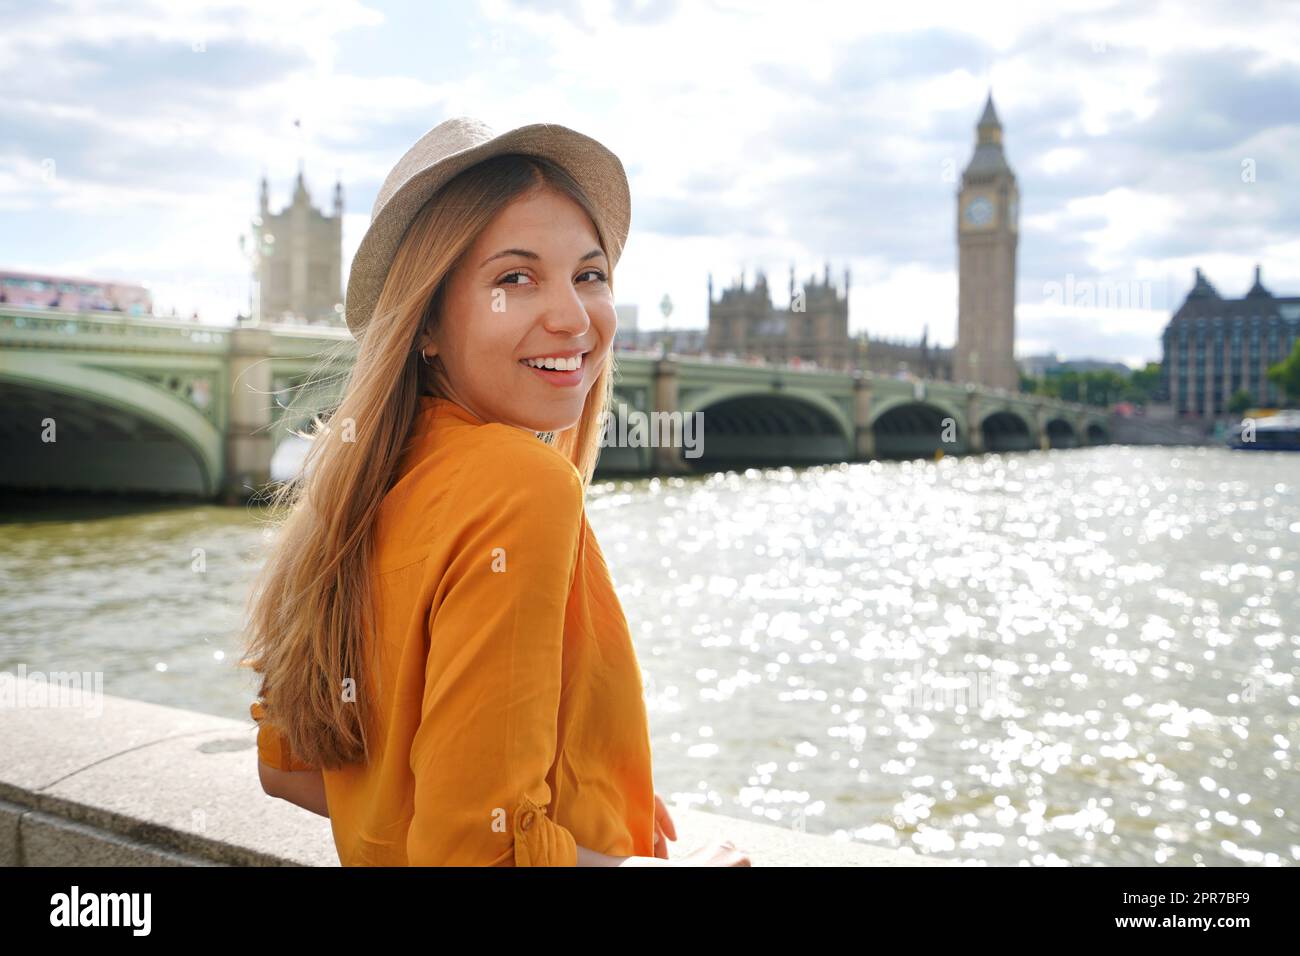 Schönes Mädchen in London, Großbritannien. Porträt einer jungen stilvollen Frau in orangefarbenem Hemd und Hut, die auf die Kamera blickt, mit Westminster Bridge im Hintergrund. Stockfoto